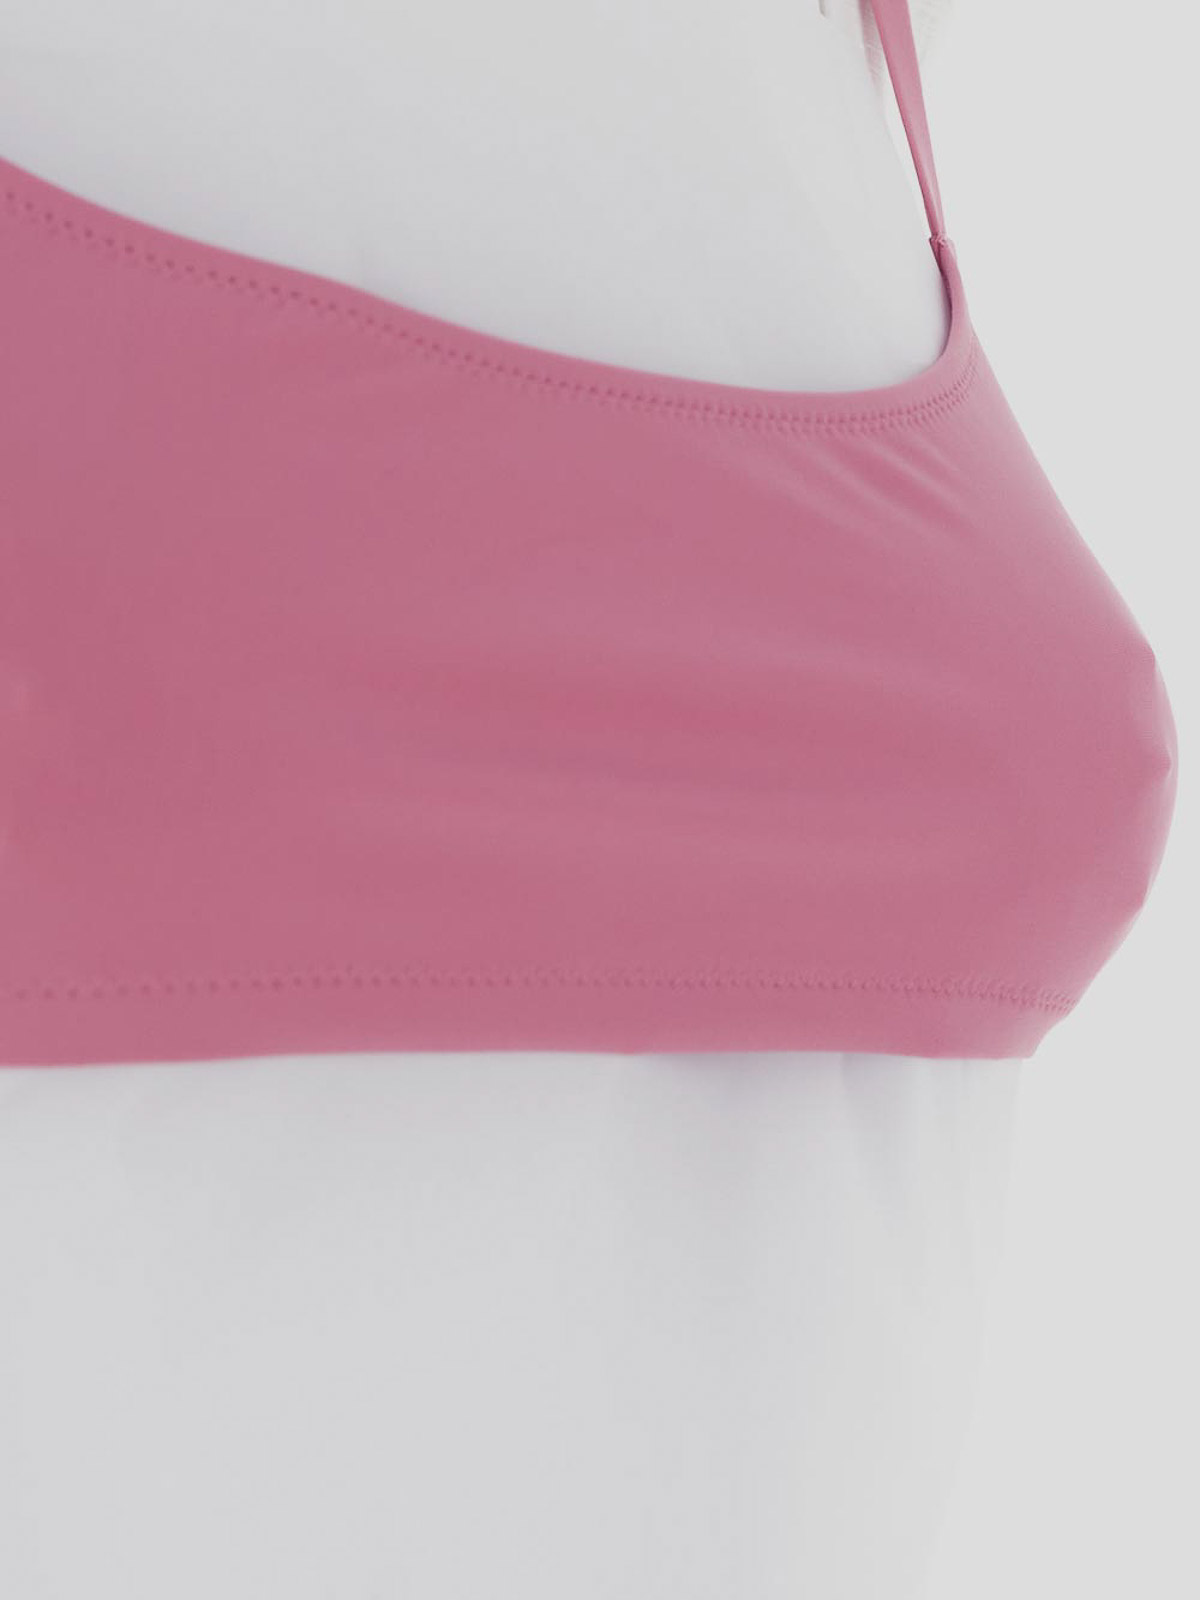 Shop Lido Low Waist Bikini In Pink In Nude & Neutrals